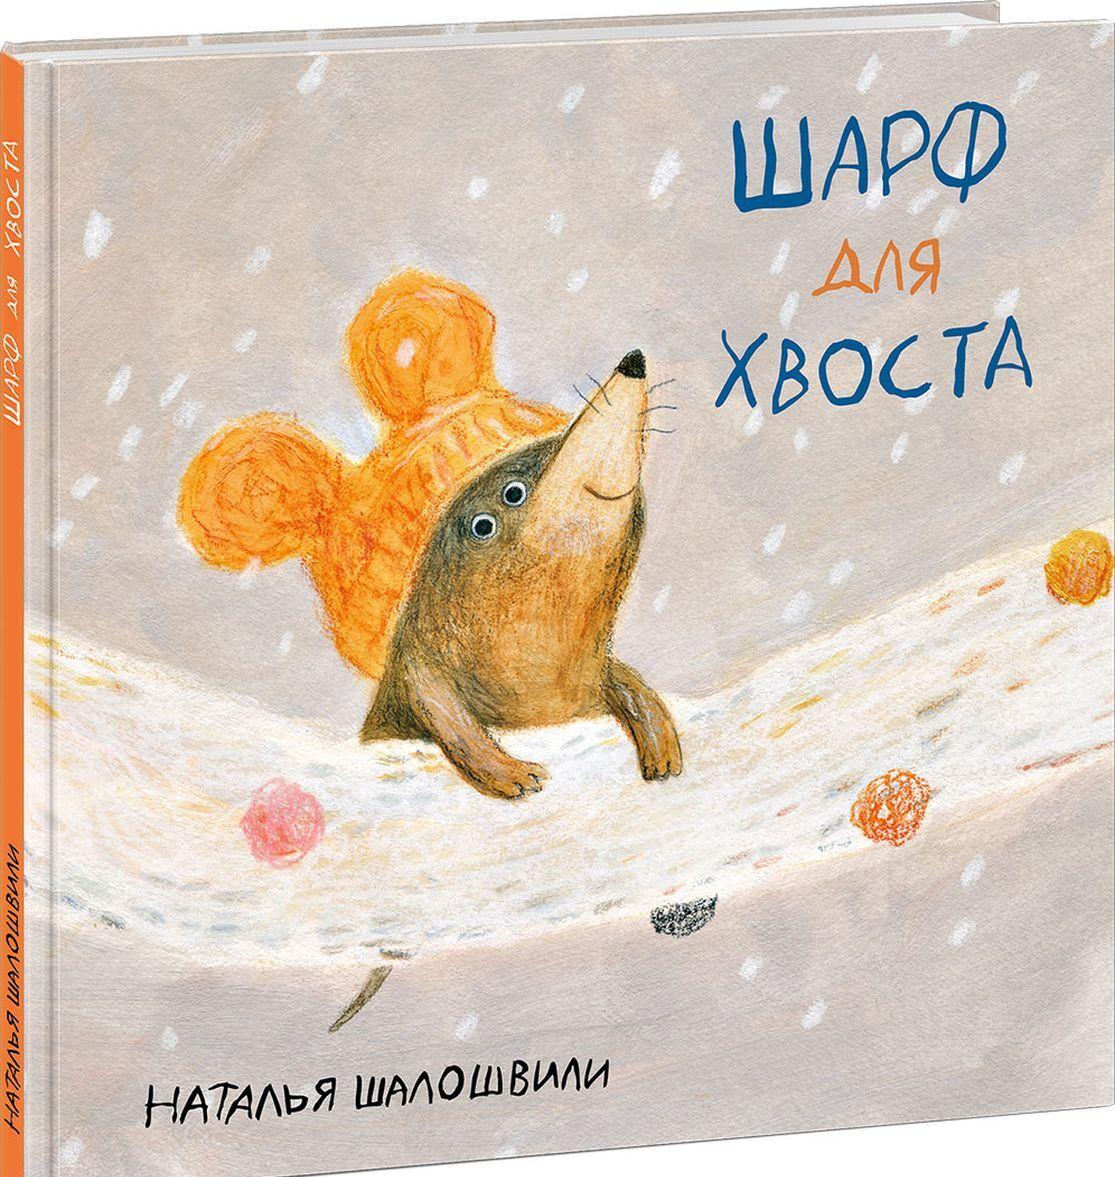 Книга Шарф для хвоста Наталья Шалошвили